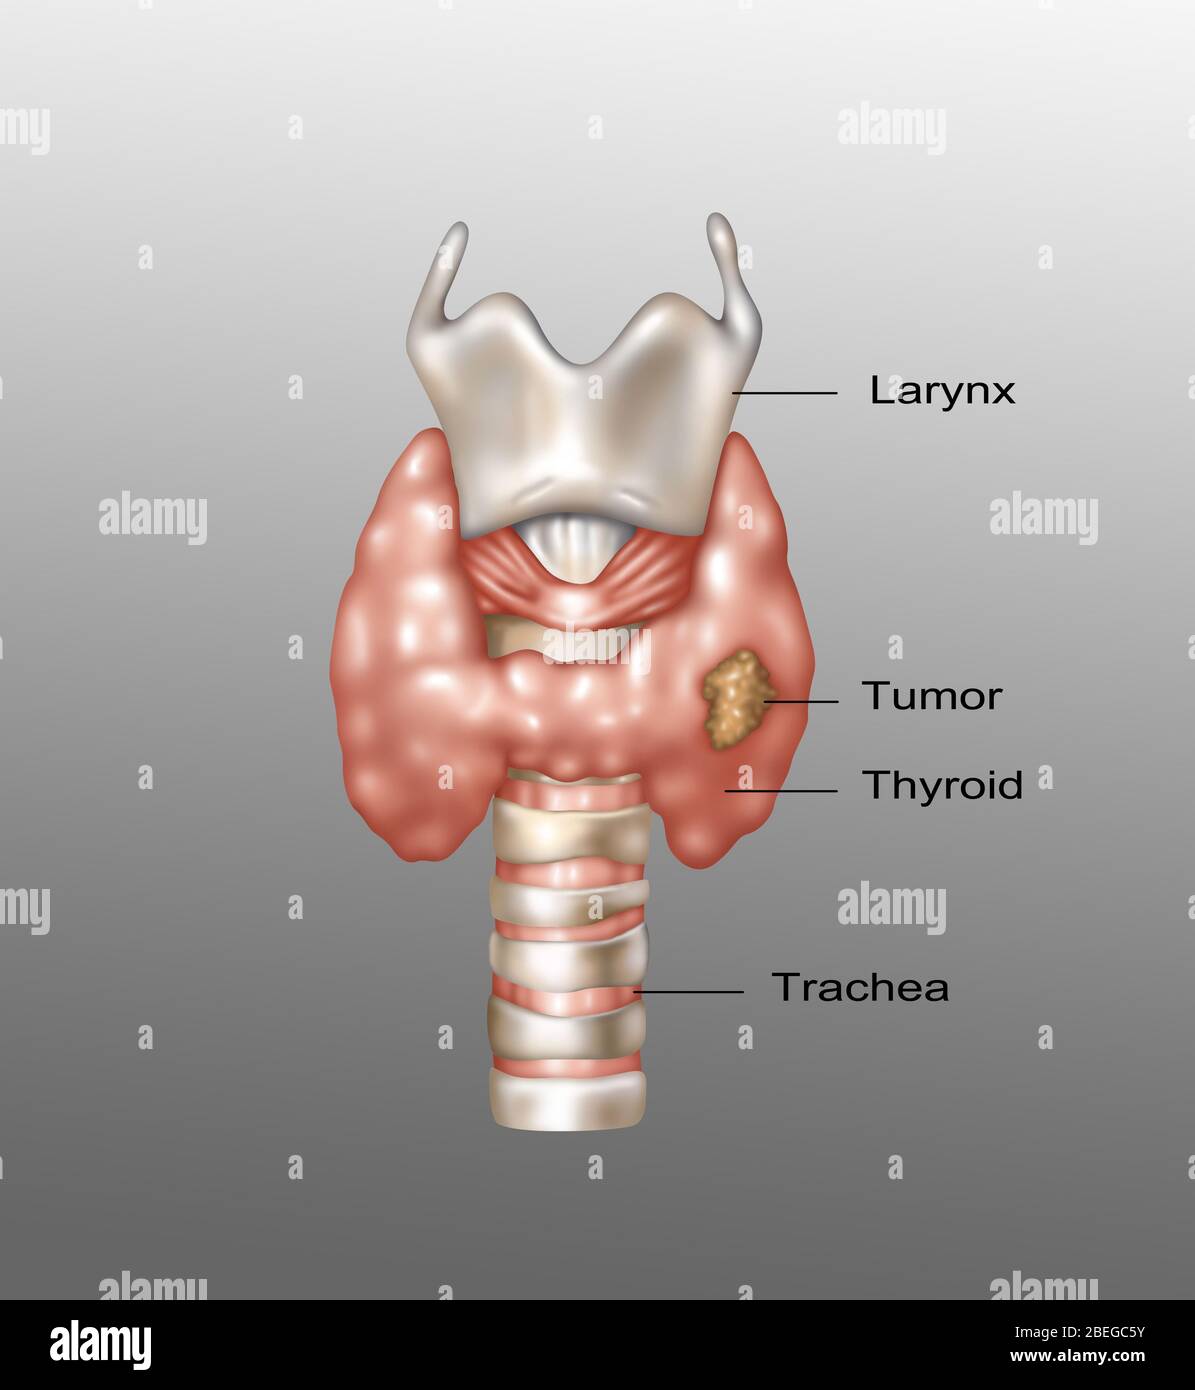 Illustration montrant l'emplacement du larynx, de la glande thyroïde et de la trachée. Une croissance maligne peut être observée dans la partie inférieure droite de la thyroïde. Banque D'Images